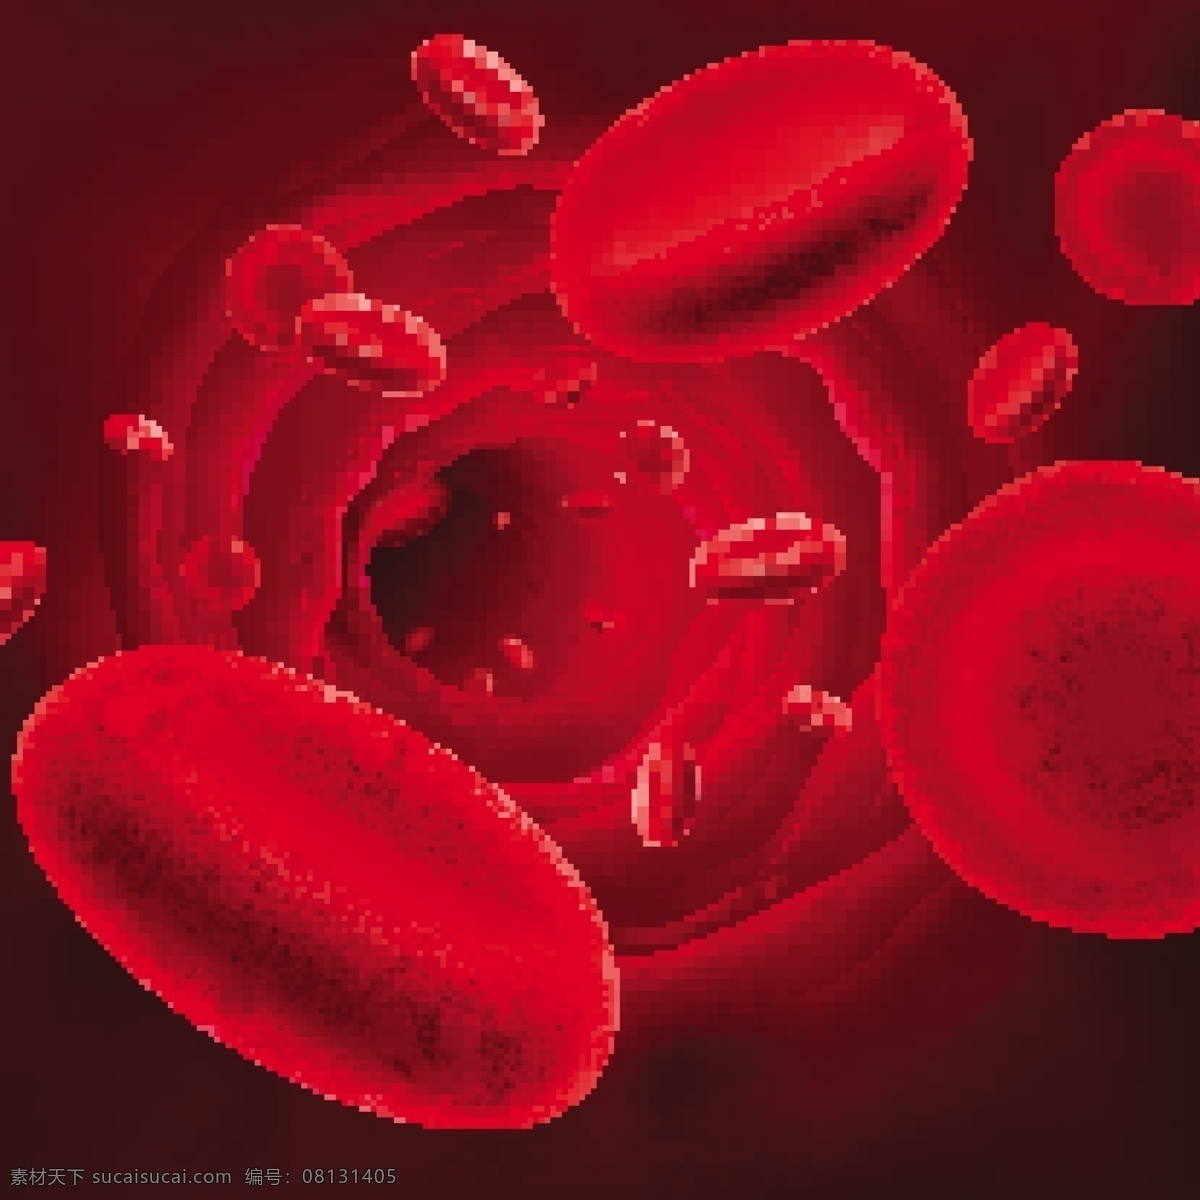 红细胞 血液 医疗 医学 医院 血迹背景 矢量 生活百科 医疗保健